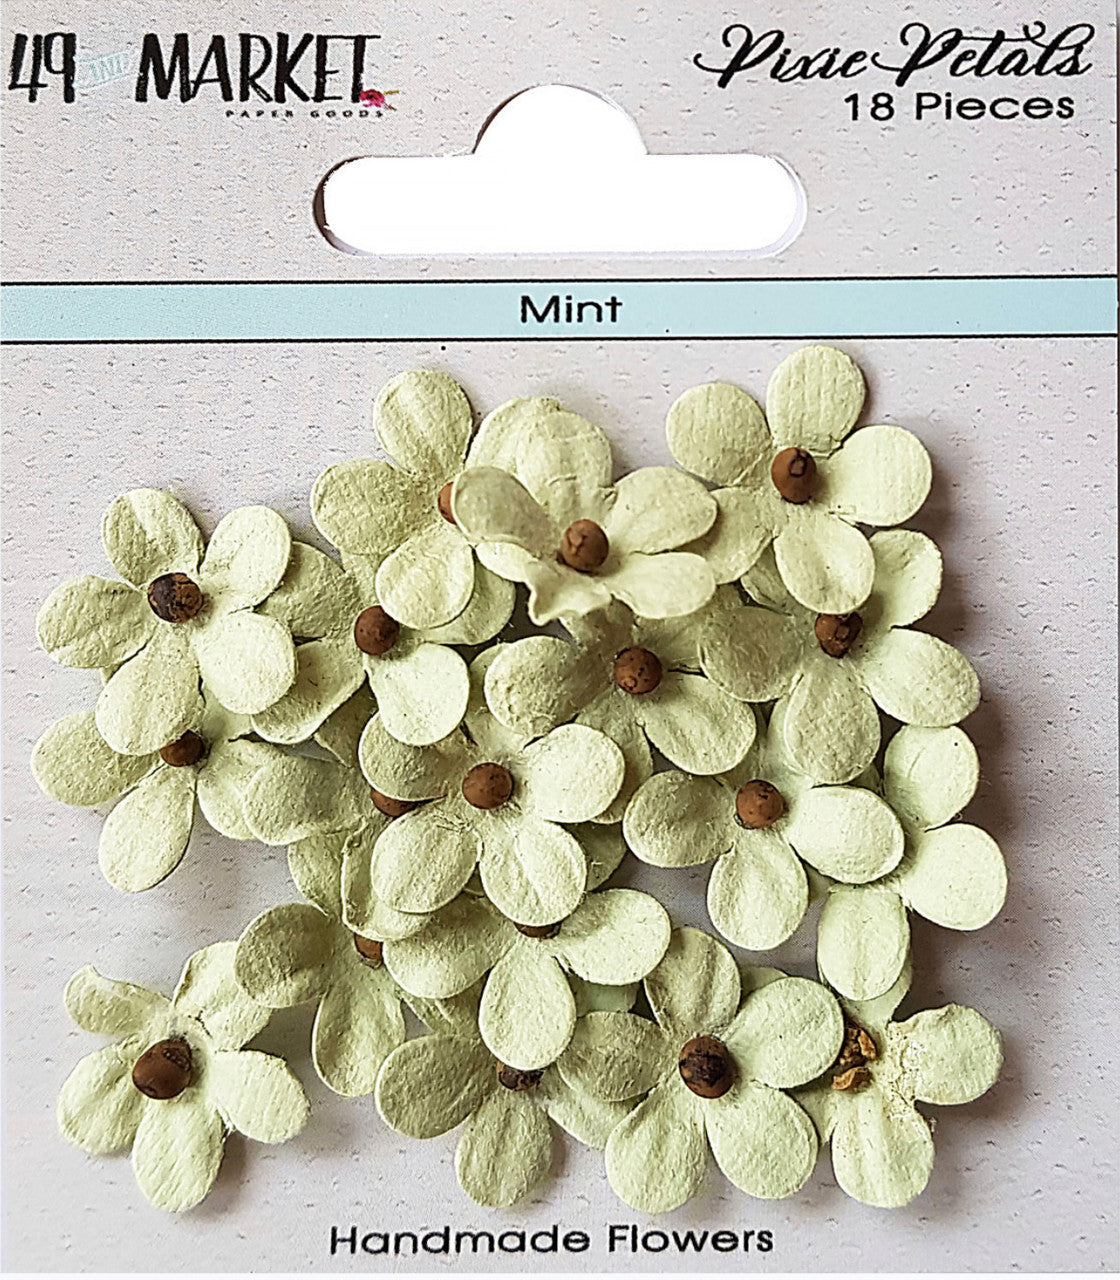 49 and Market Pixie Petals Mint Flowers